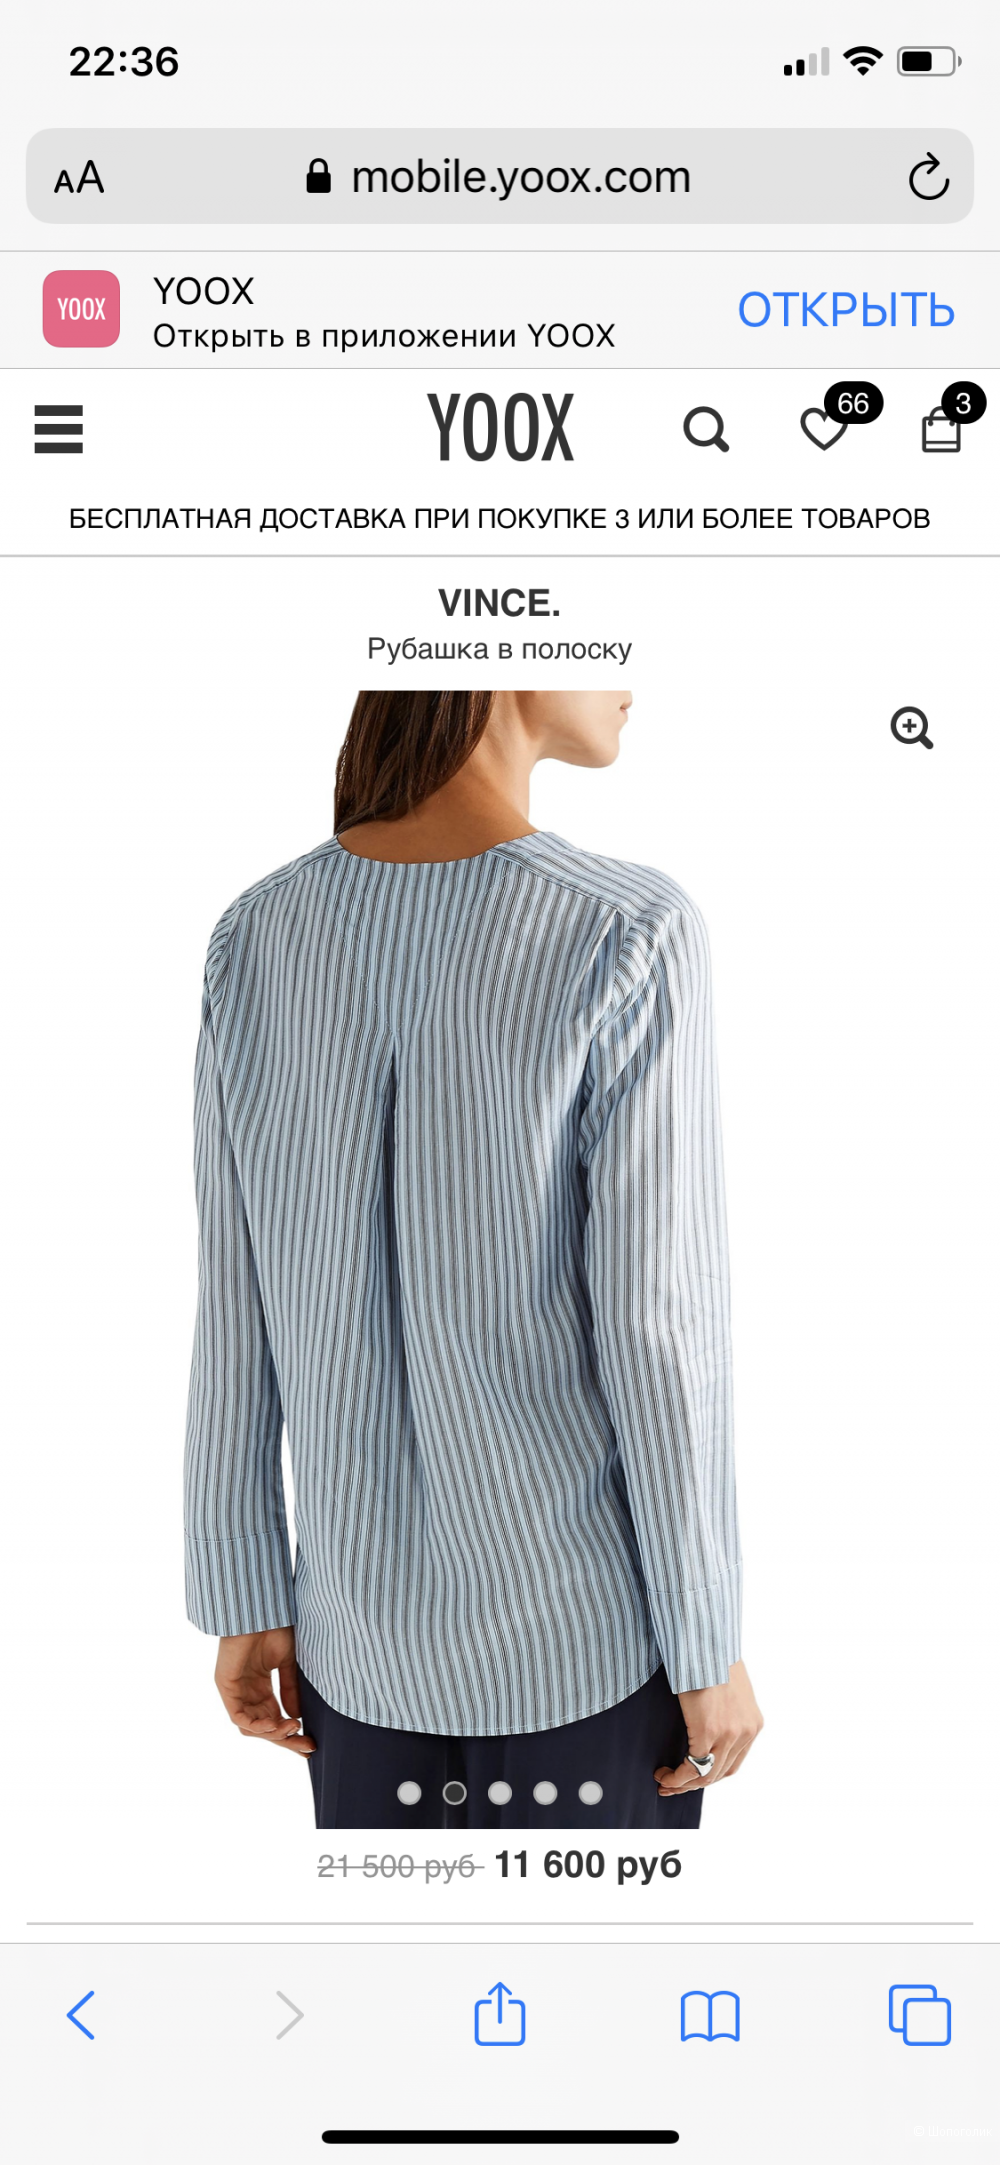 Шелковая блузка Vince. , размер 44-46